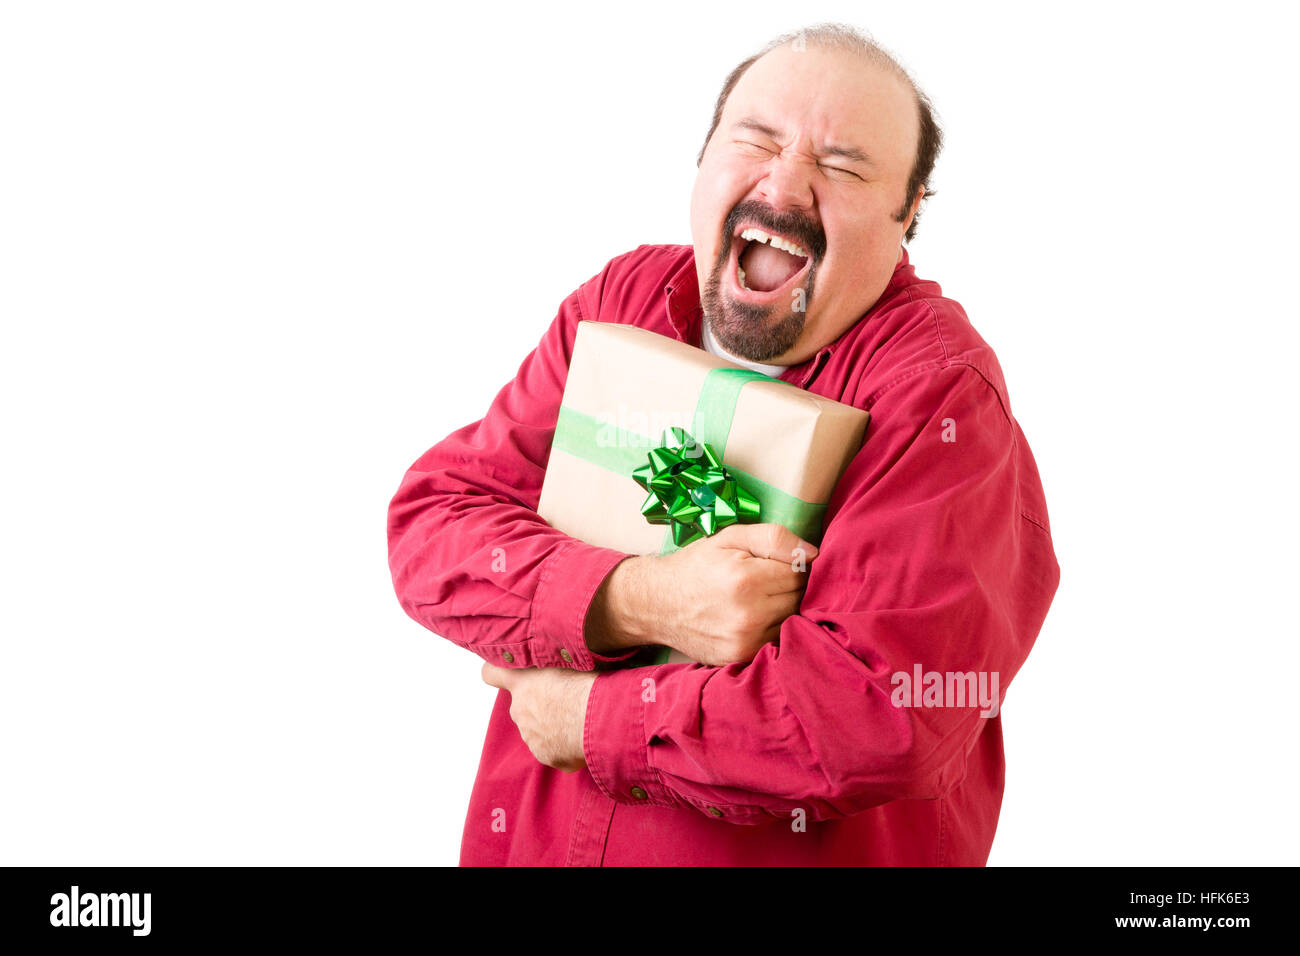 Felice urlando uomo in rosso azienda dono avvolto in carta oro e nastro di verde su sfondo bianco Foto Stock